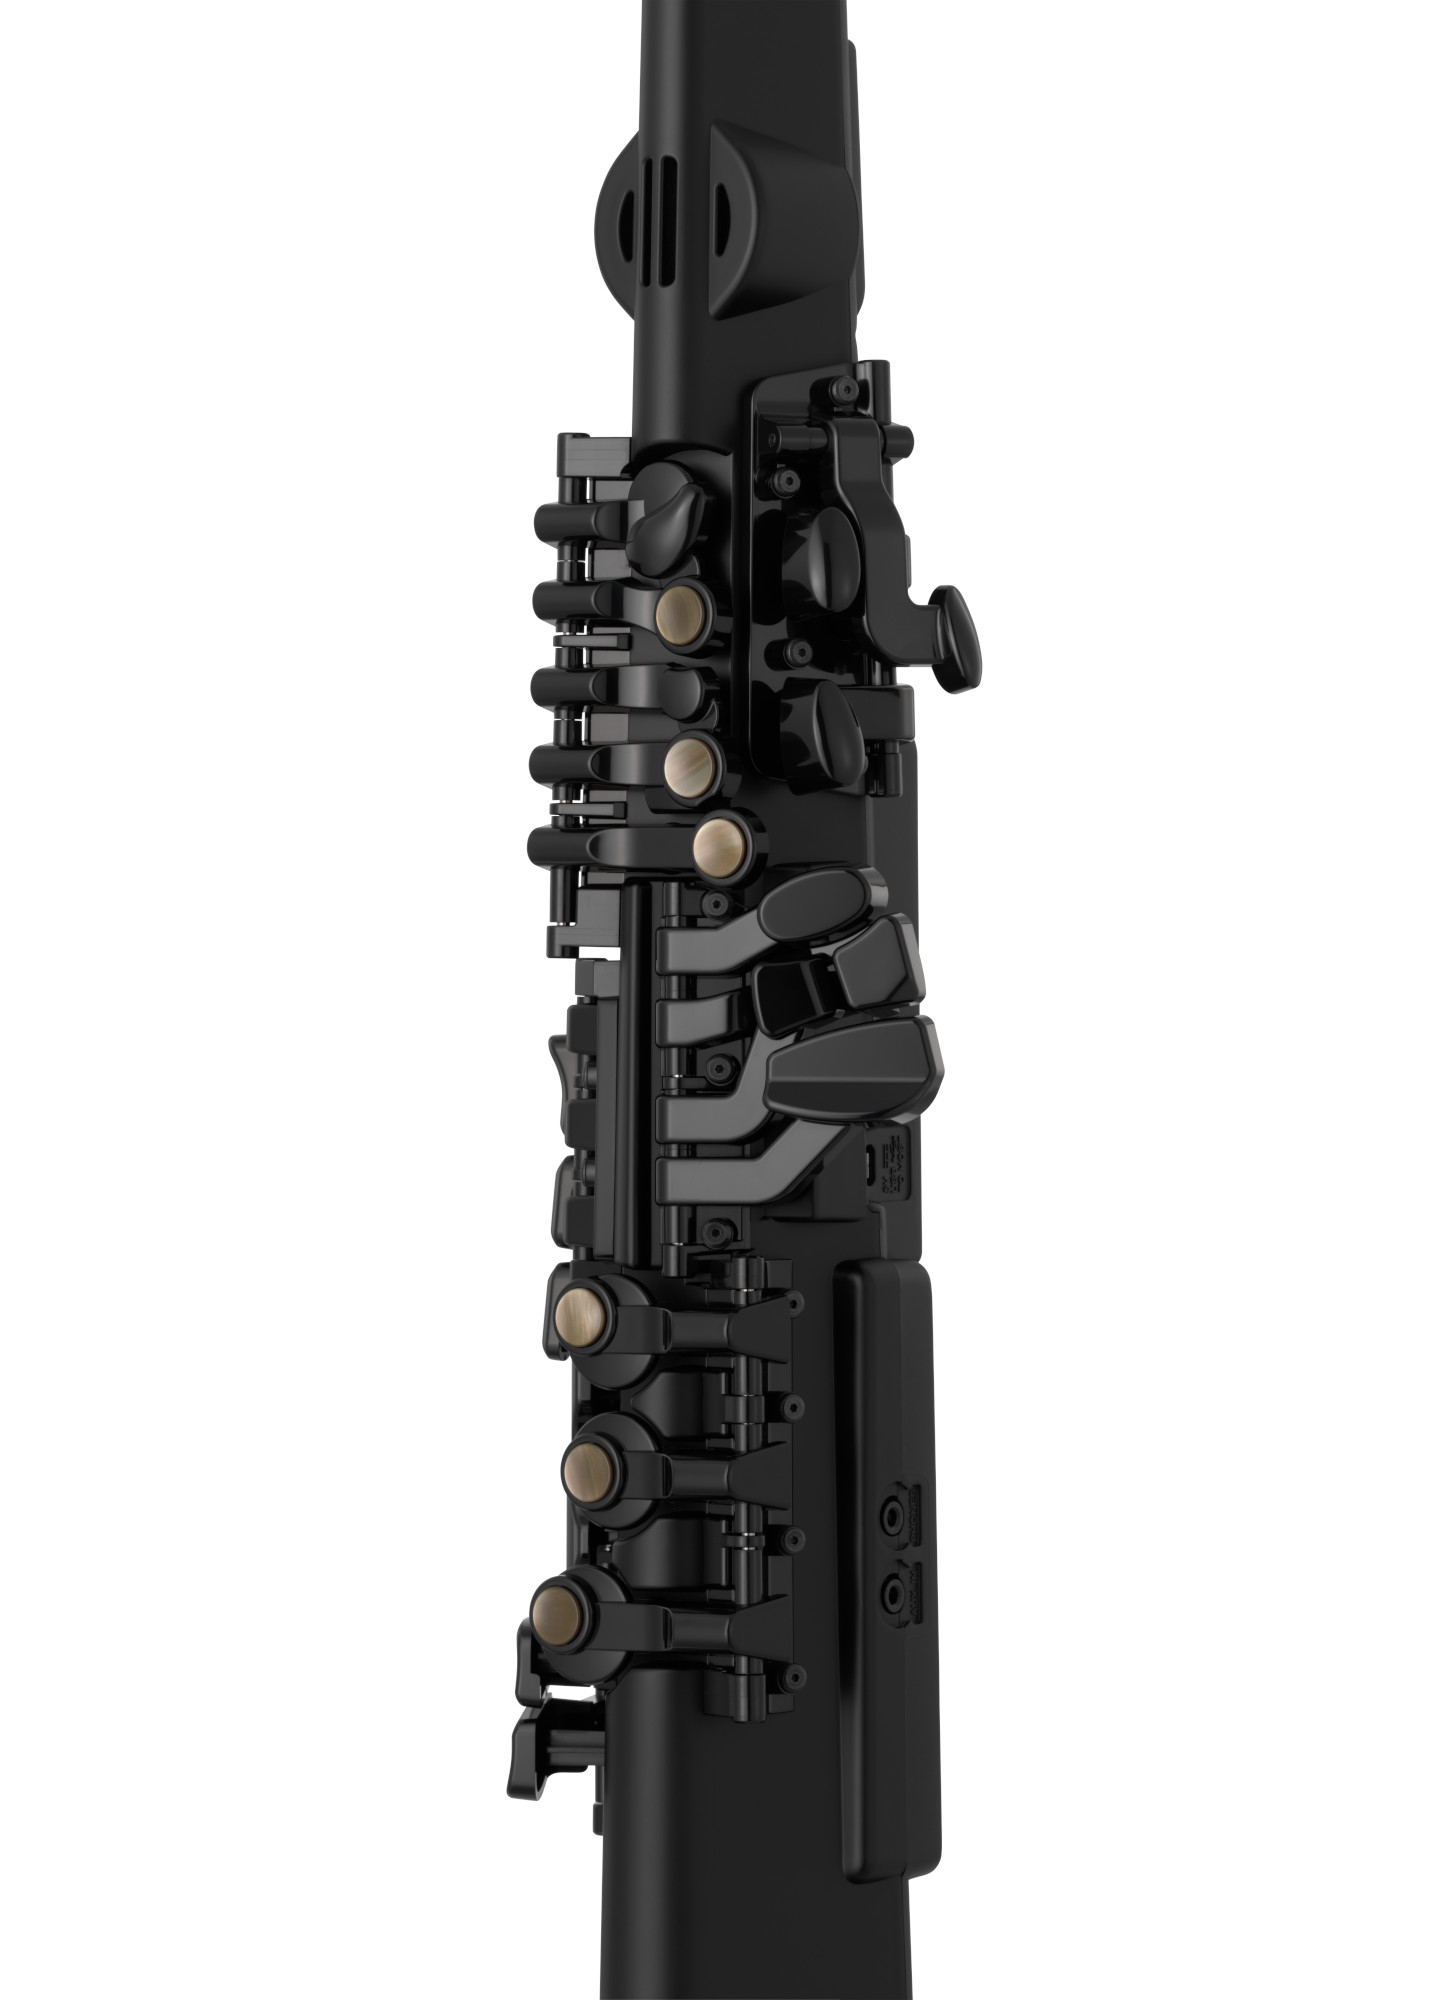 Yamaha Yds-120 Digital Saxophone - Instrumento de viento electrónico - Variation 7